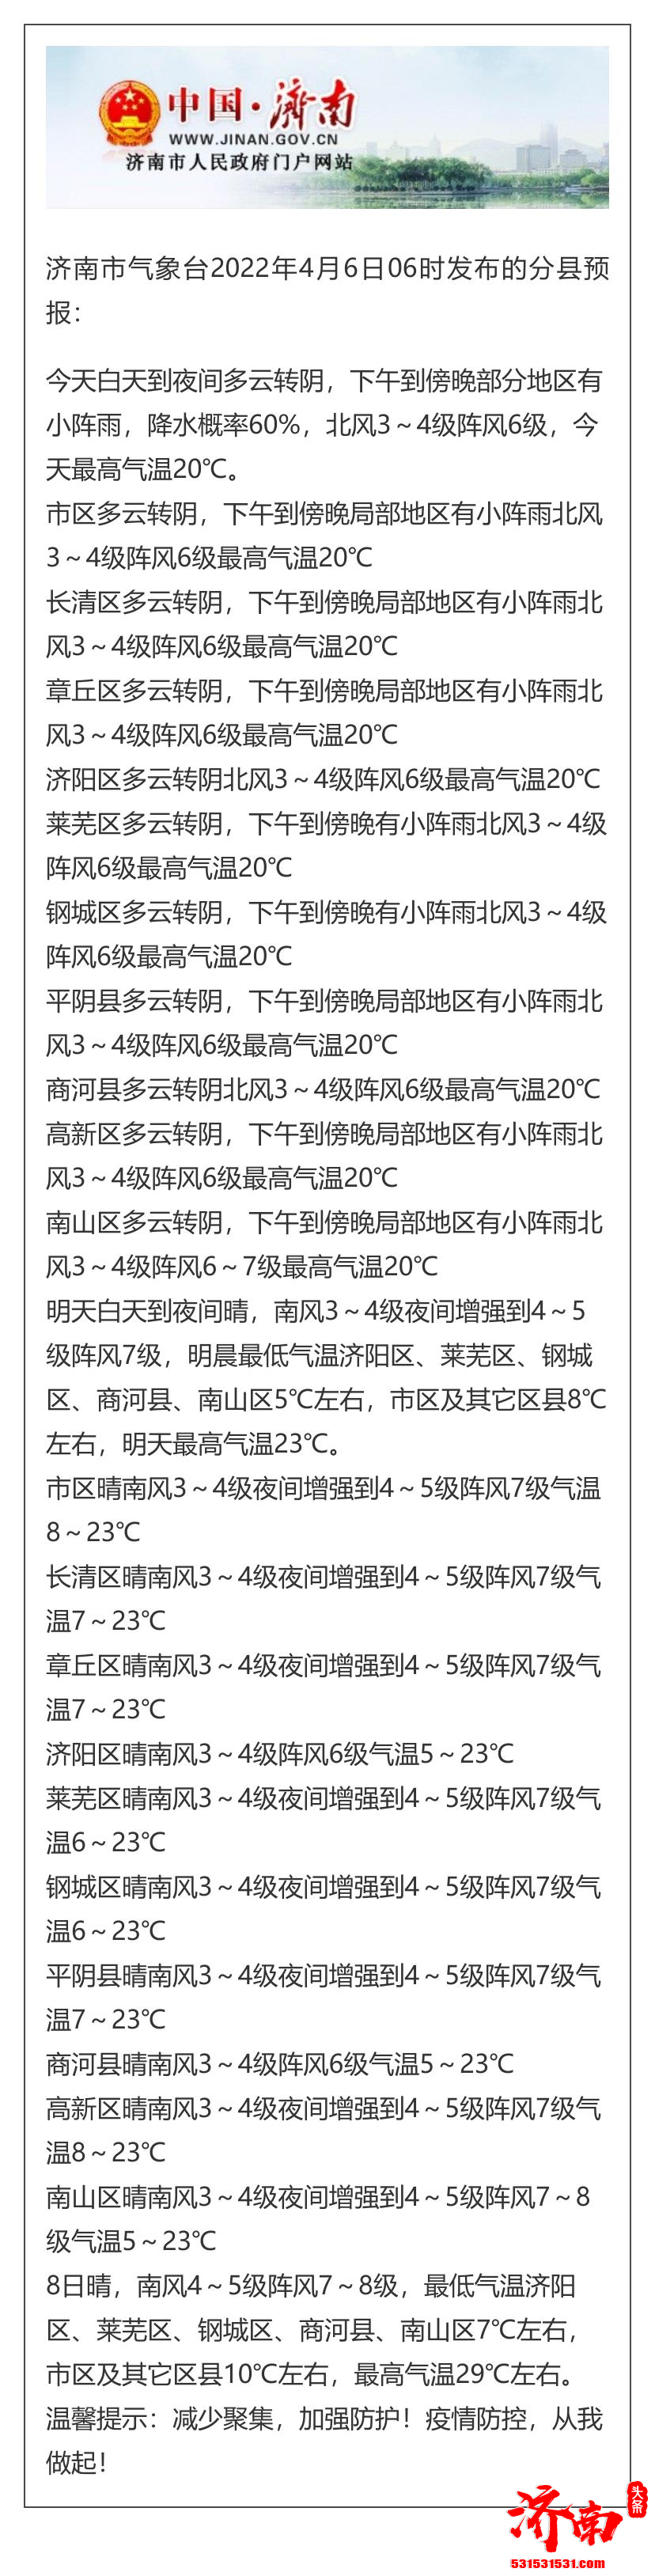 济南市气象台4月6日06时发布天气预报 傍晚有雨